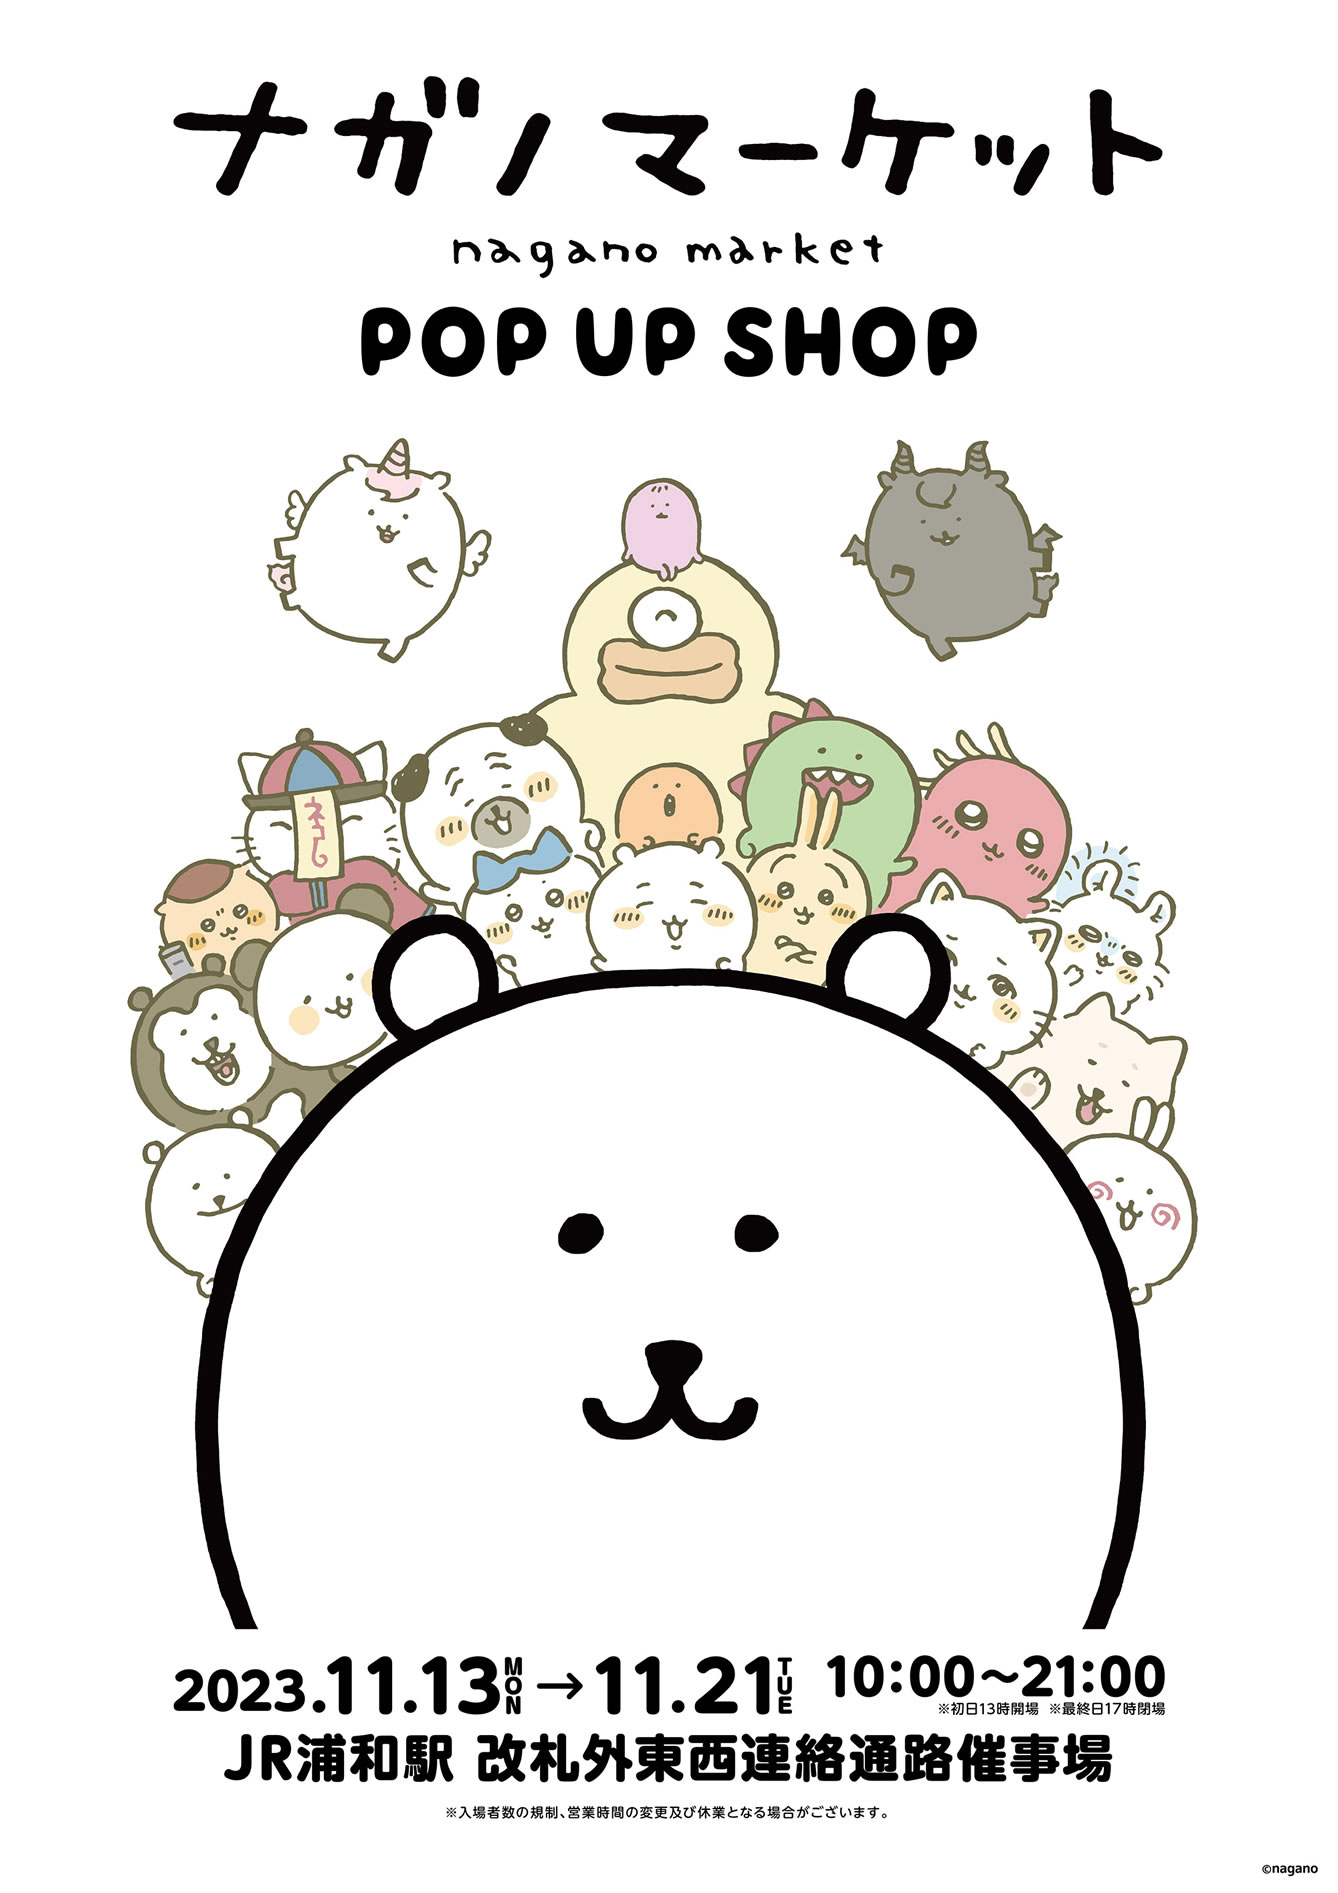 ナガノマーケット POP UP SHOP